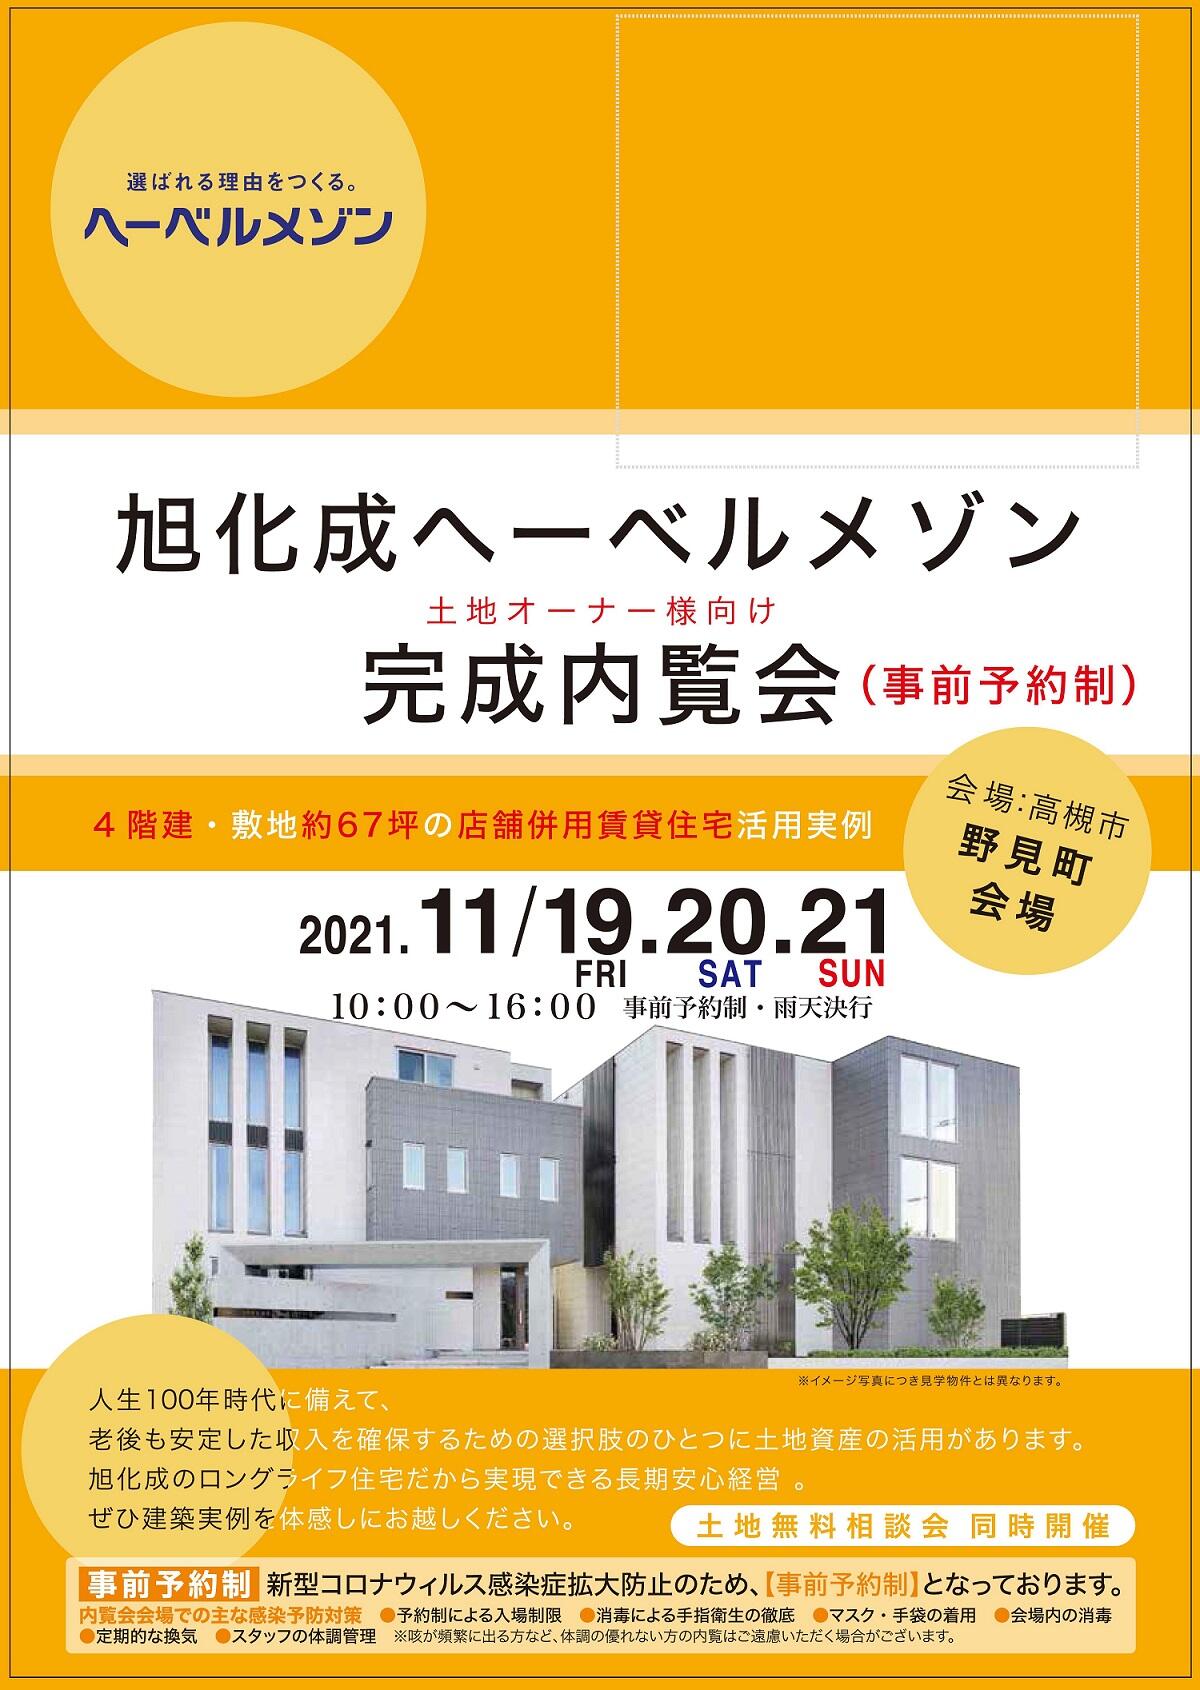 https://www.asahi-kasei.co.jp/maison/hebelplaza/blog/18/osaka/item/2021/20211108-1.jpg